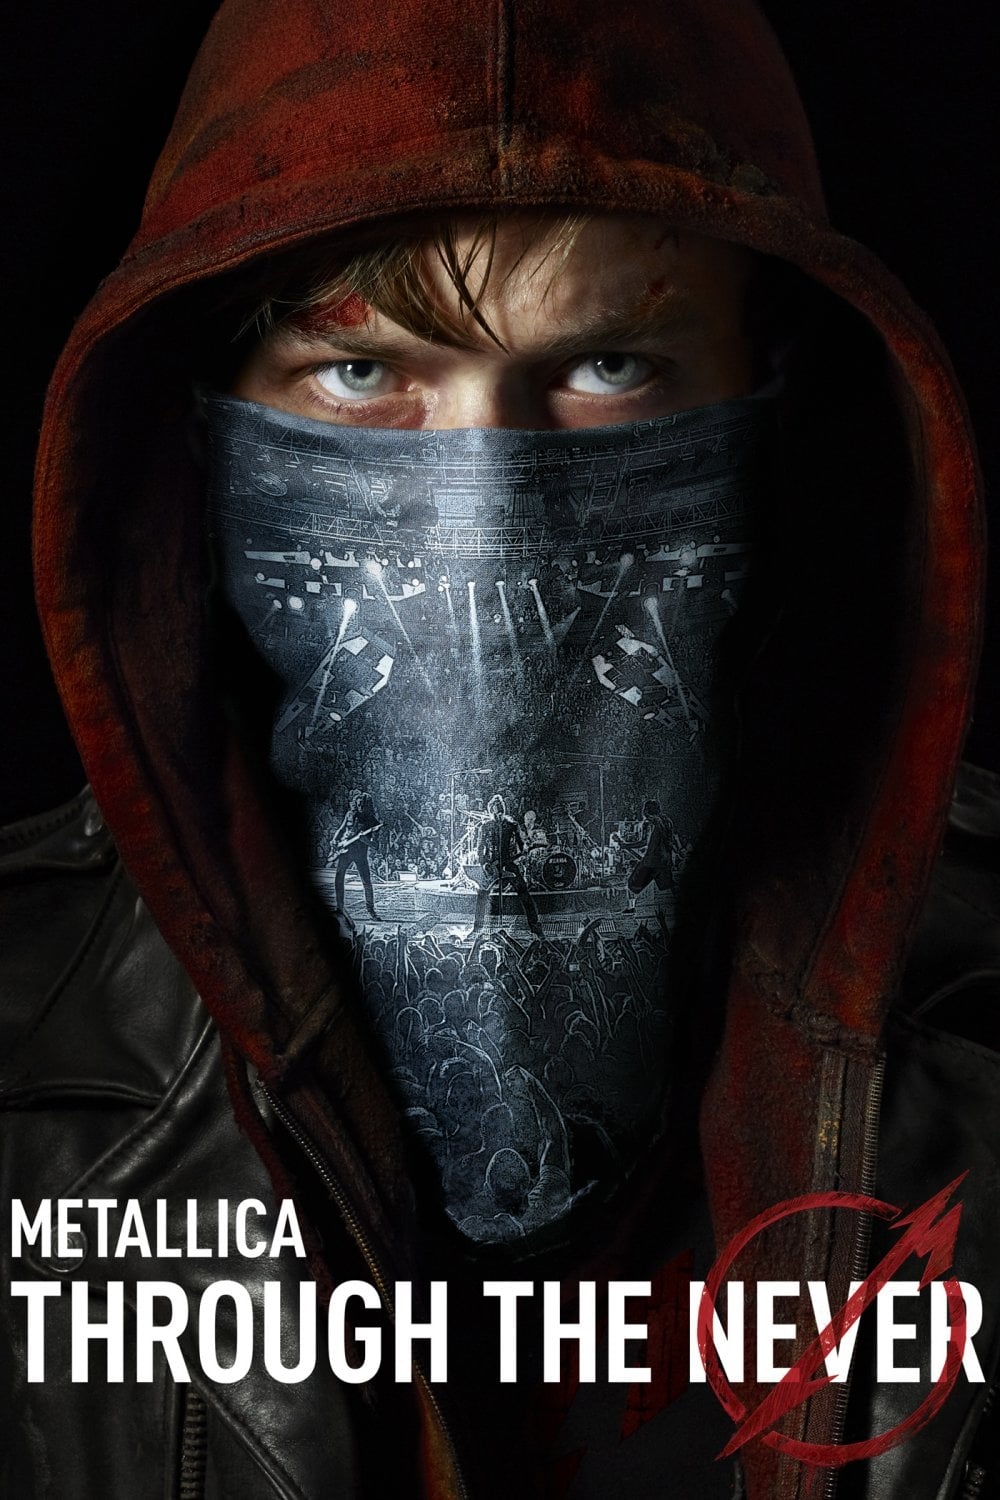 Metallica: Through the Never [HD] (2013)